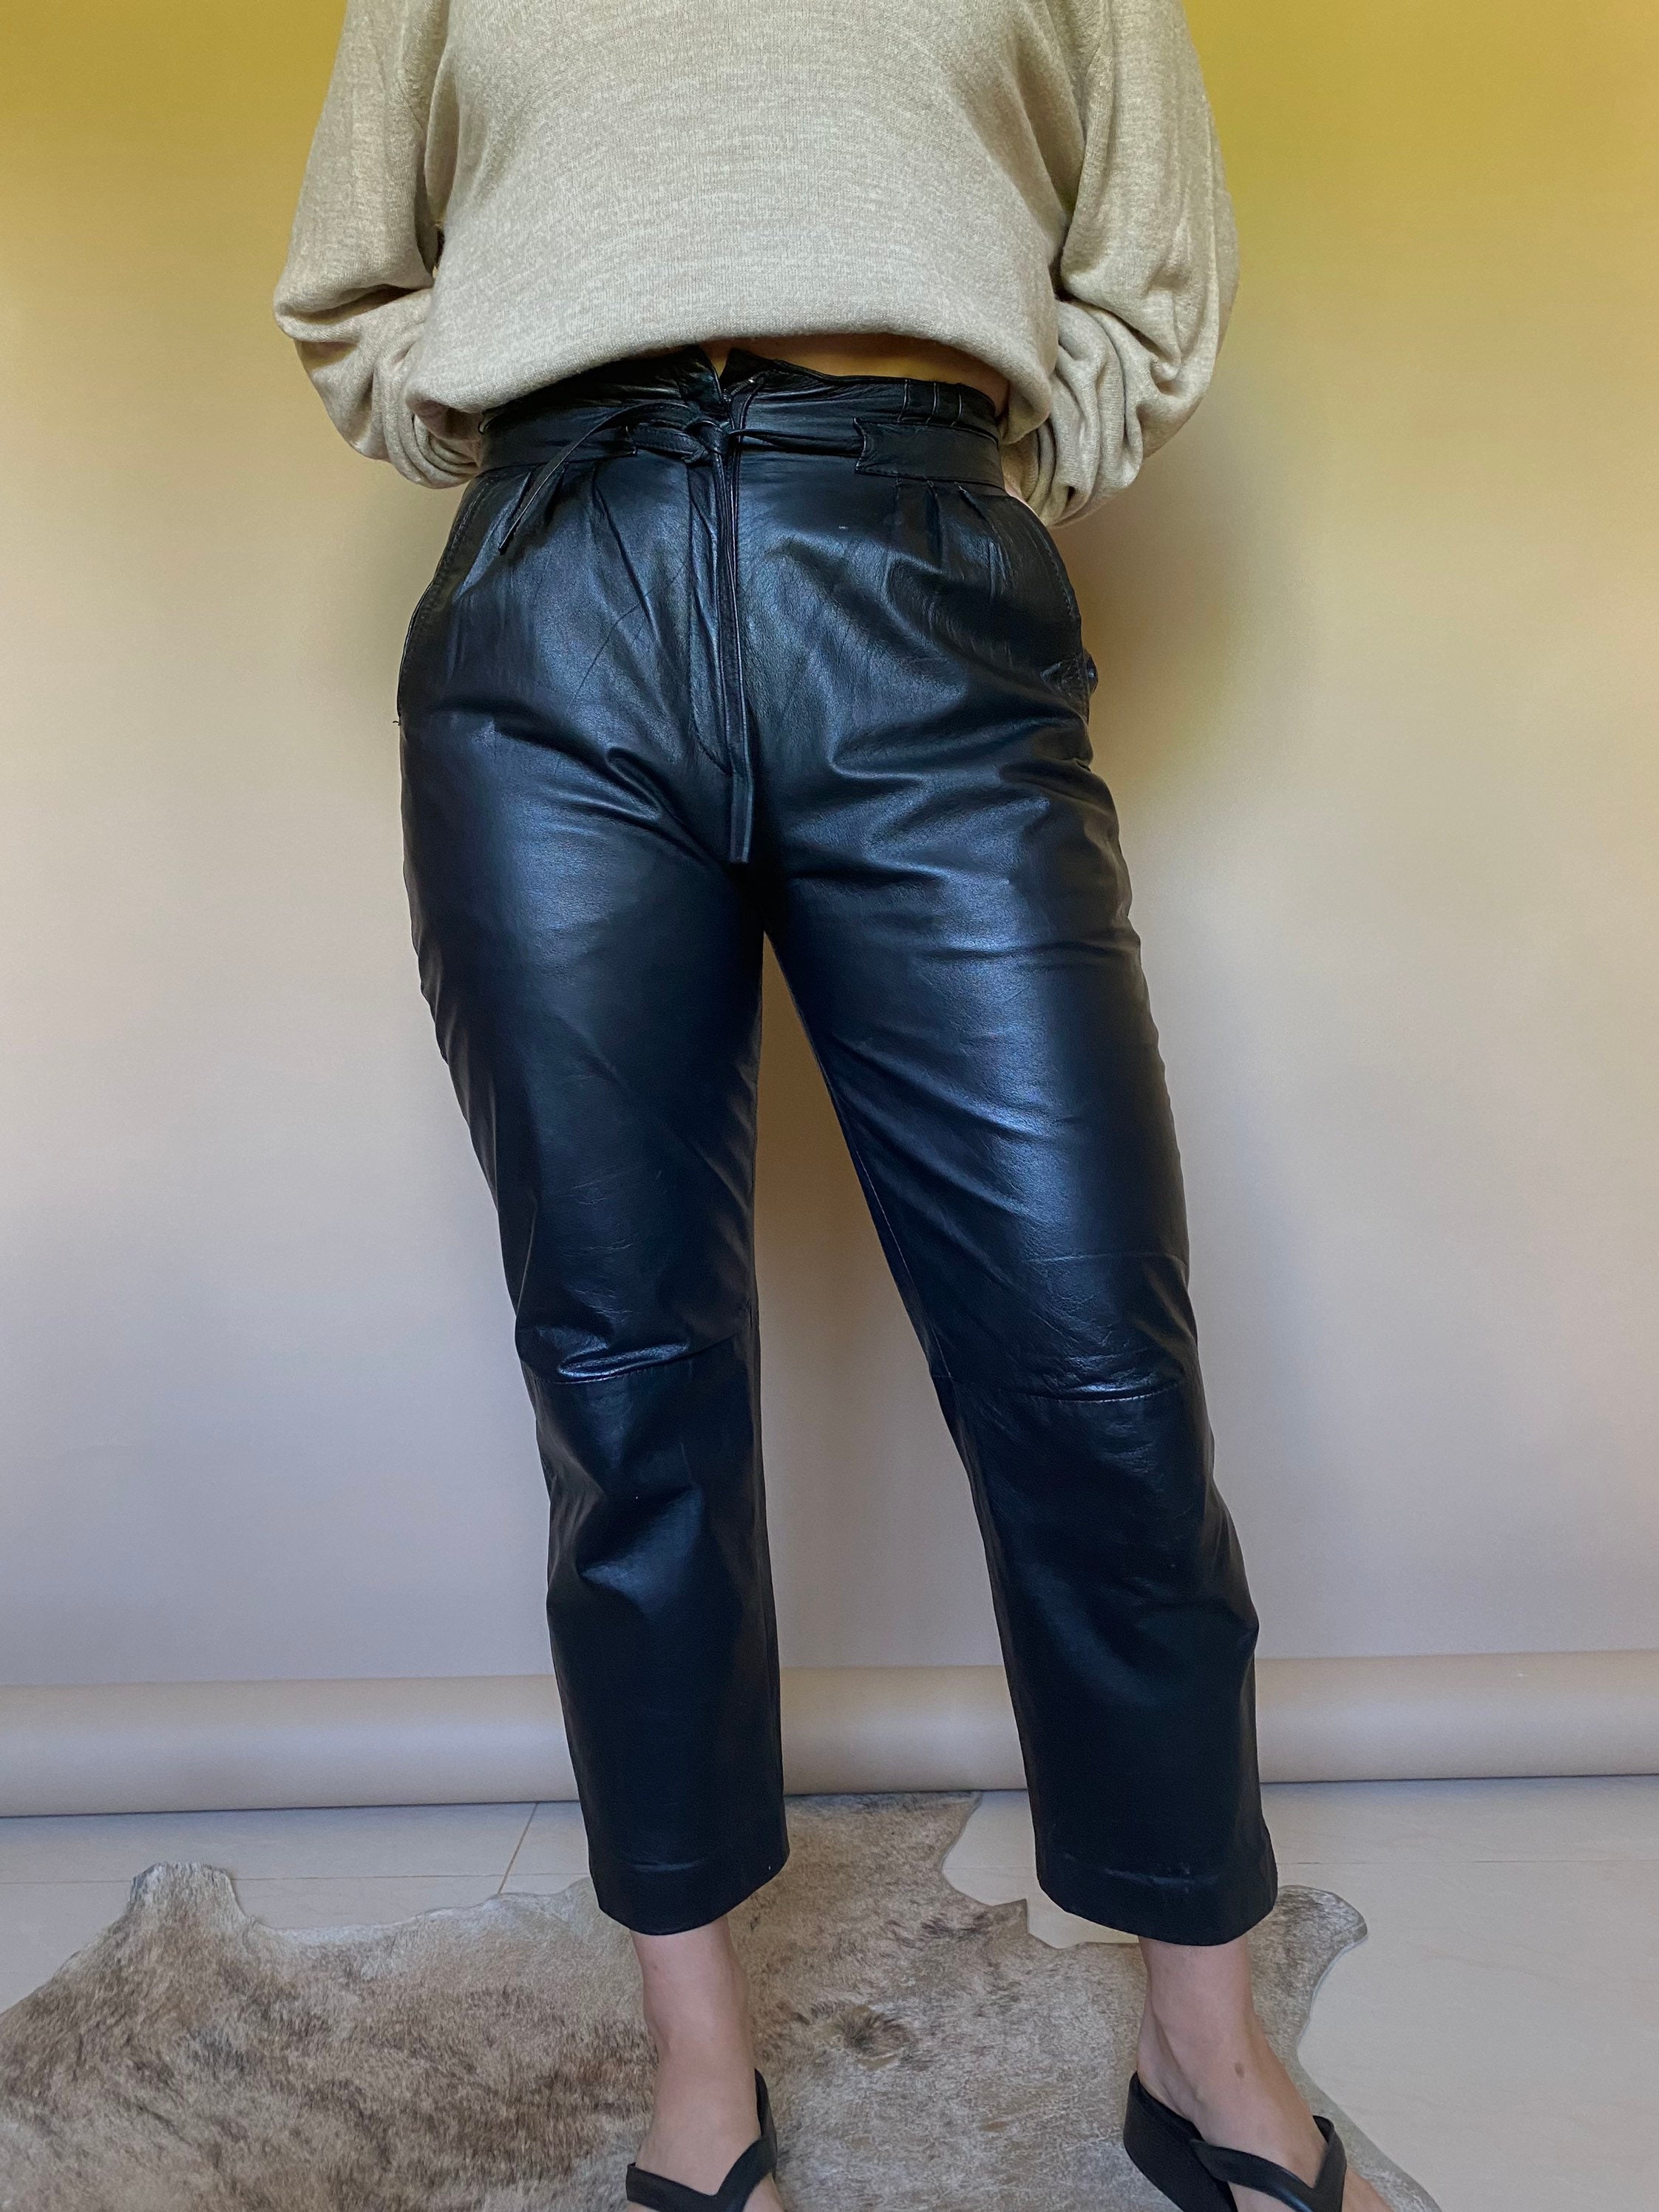 F751 used vintage leather pants リアルレザー